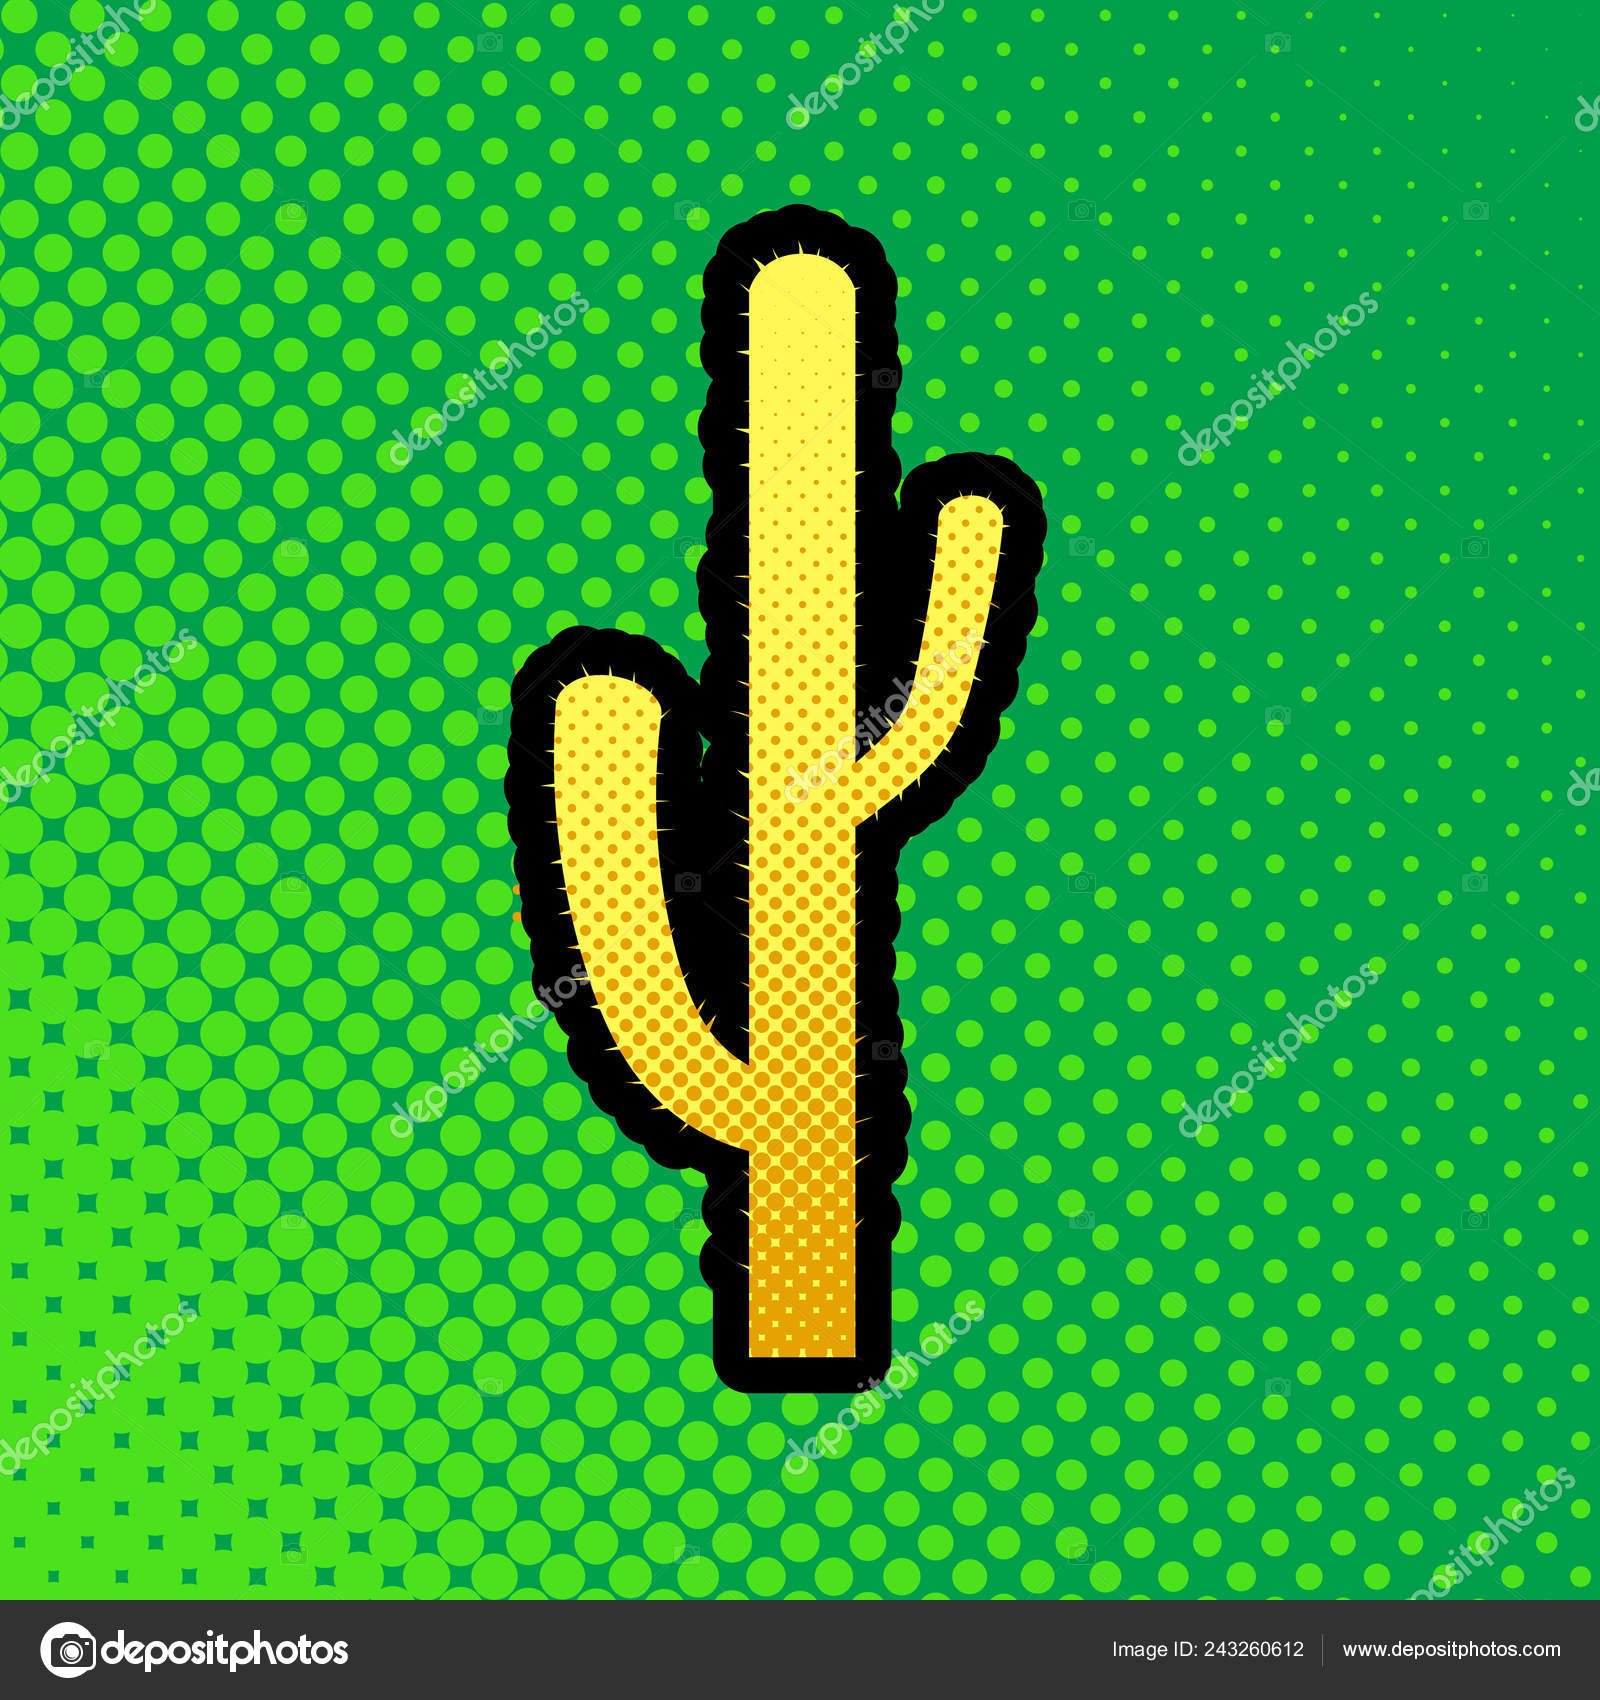 サボテンの単純な記号 ベクトル 緑の背景に黒い輪郭に黄色のドット グラデーション アイコンをオレンジ ポップアートします ストックベクター C Asmati1702 Gmail Com